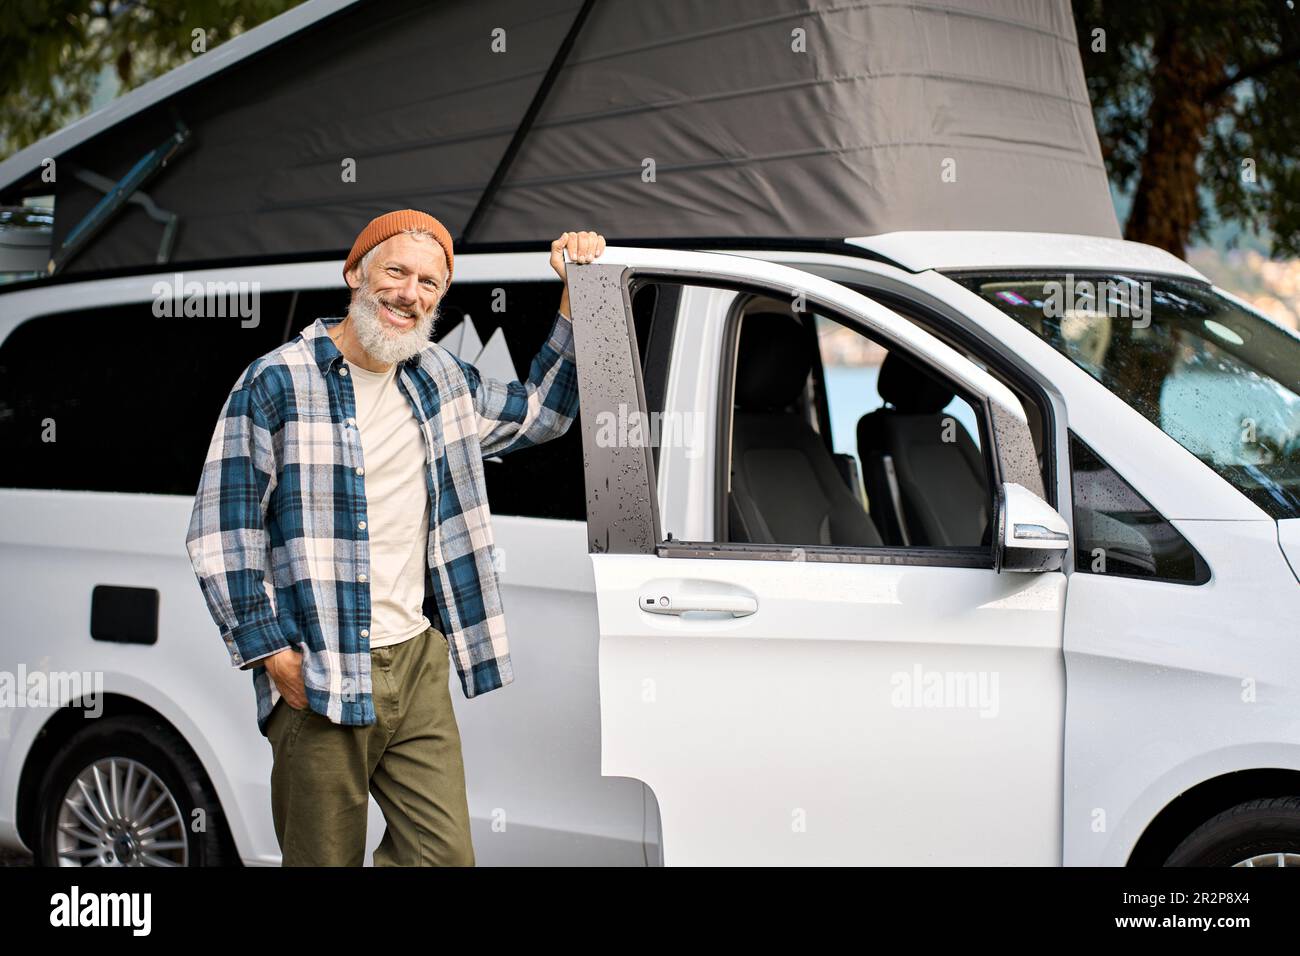 Happy older man traveler standing with camper van, campervan rentals. Stock Photo